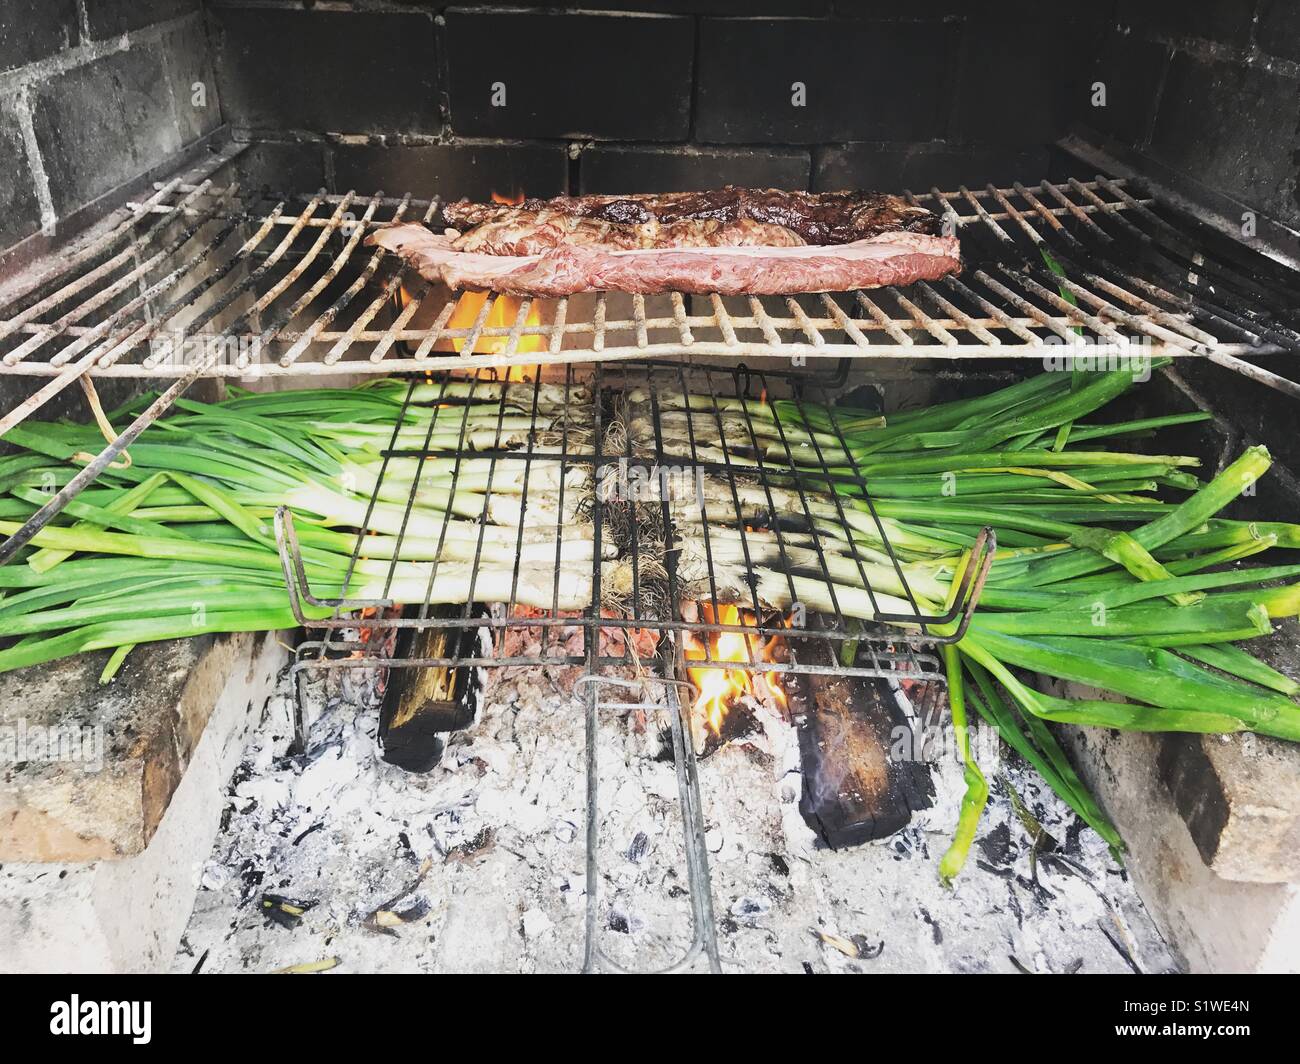 Calçots e carne in un barbecue. Barcelona, Spagna Foto Stock